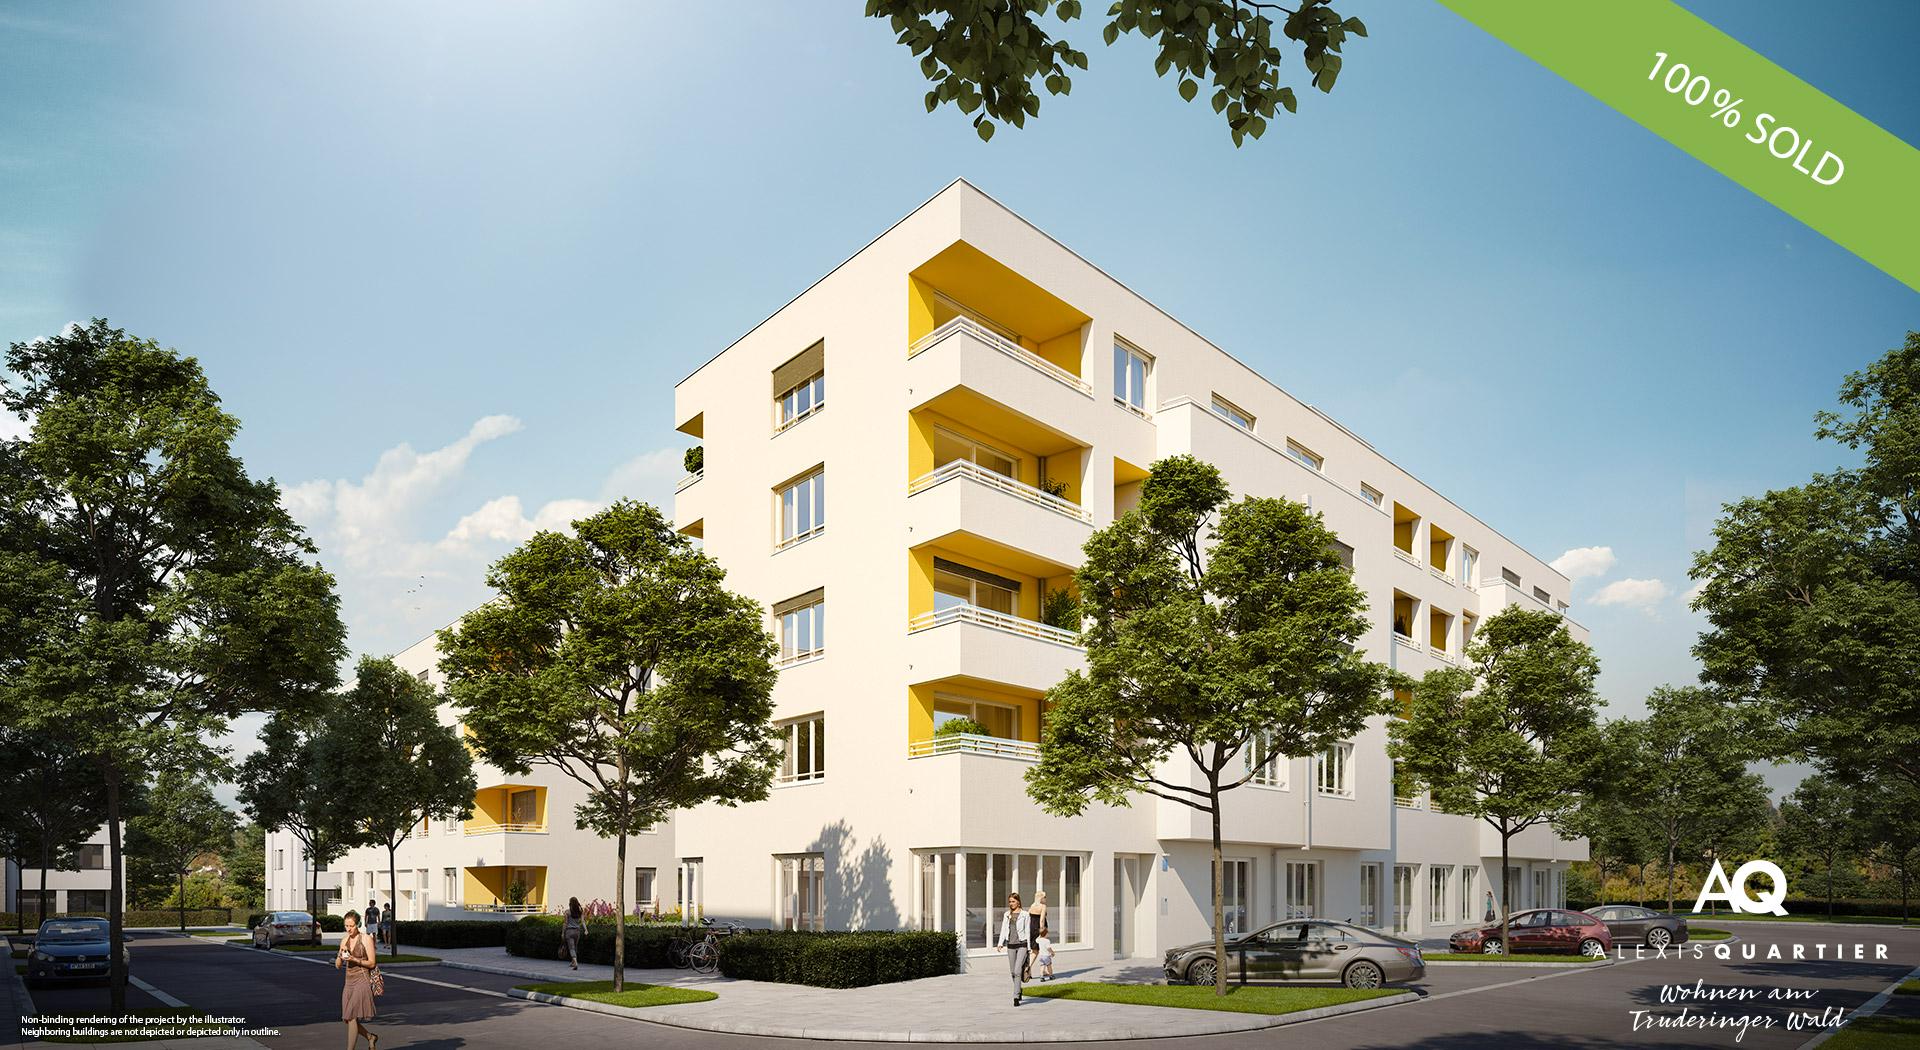 'ALEXISQUARTIER – Wohnen am Truderinger Wald' in Munich-Perlach: All condominiums sold